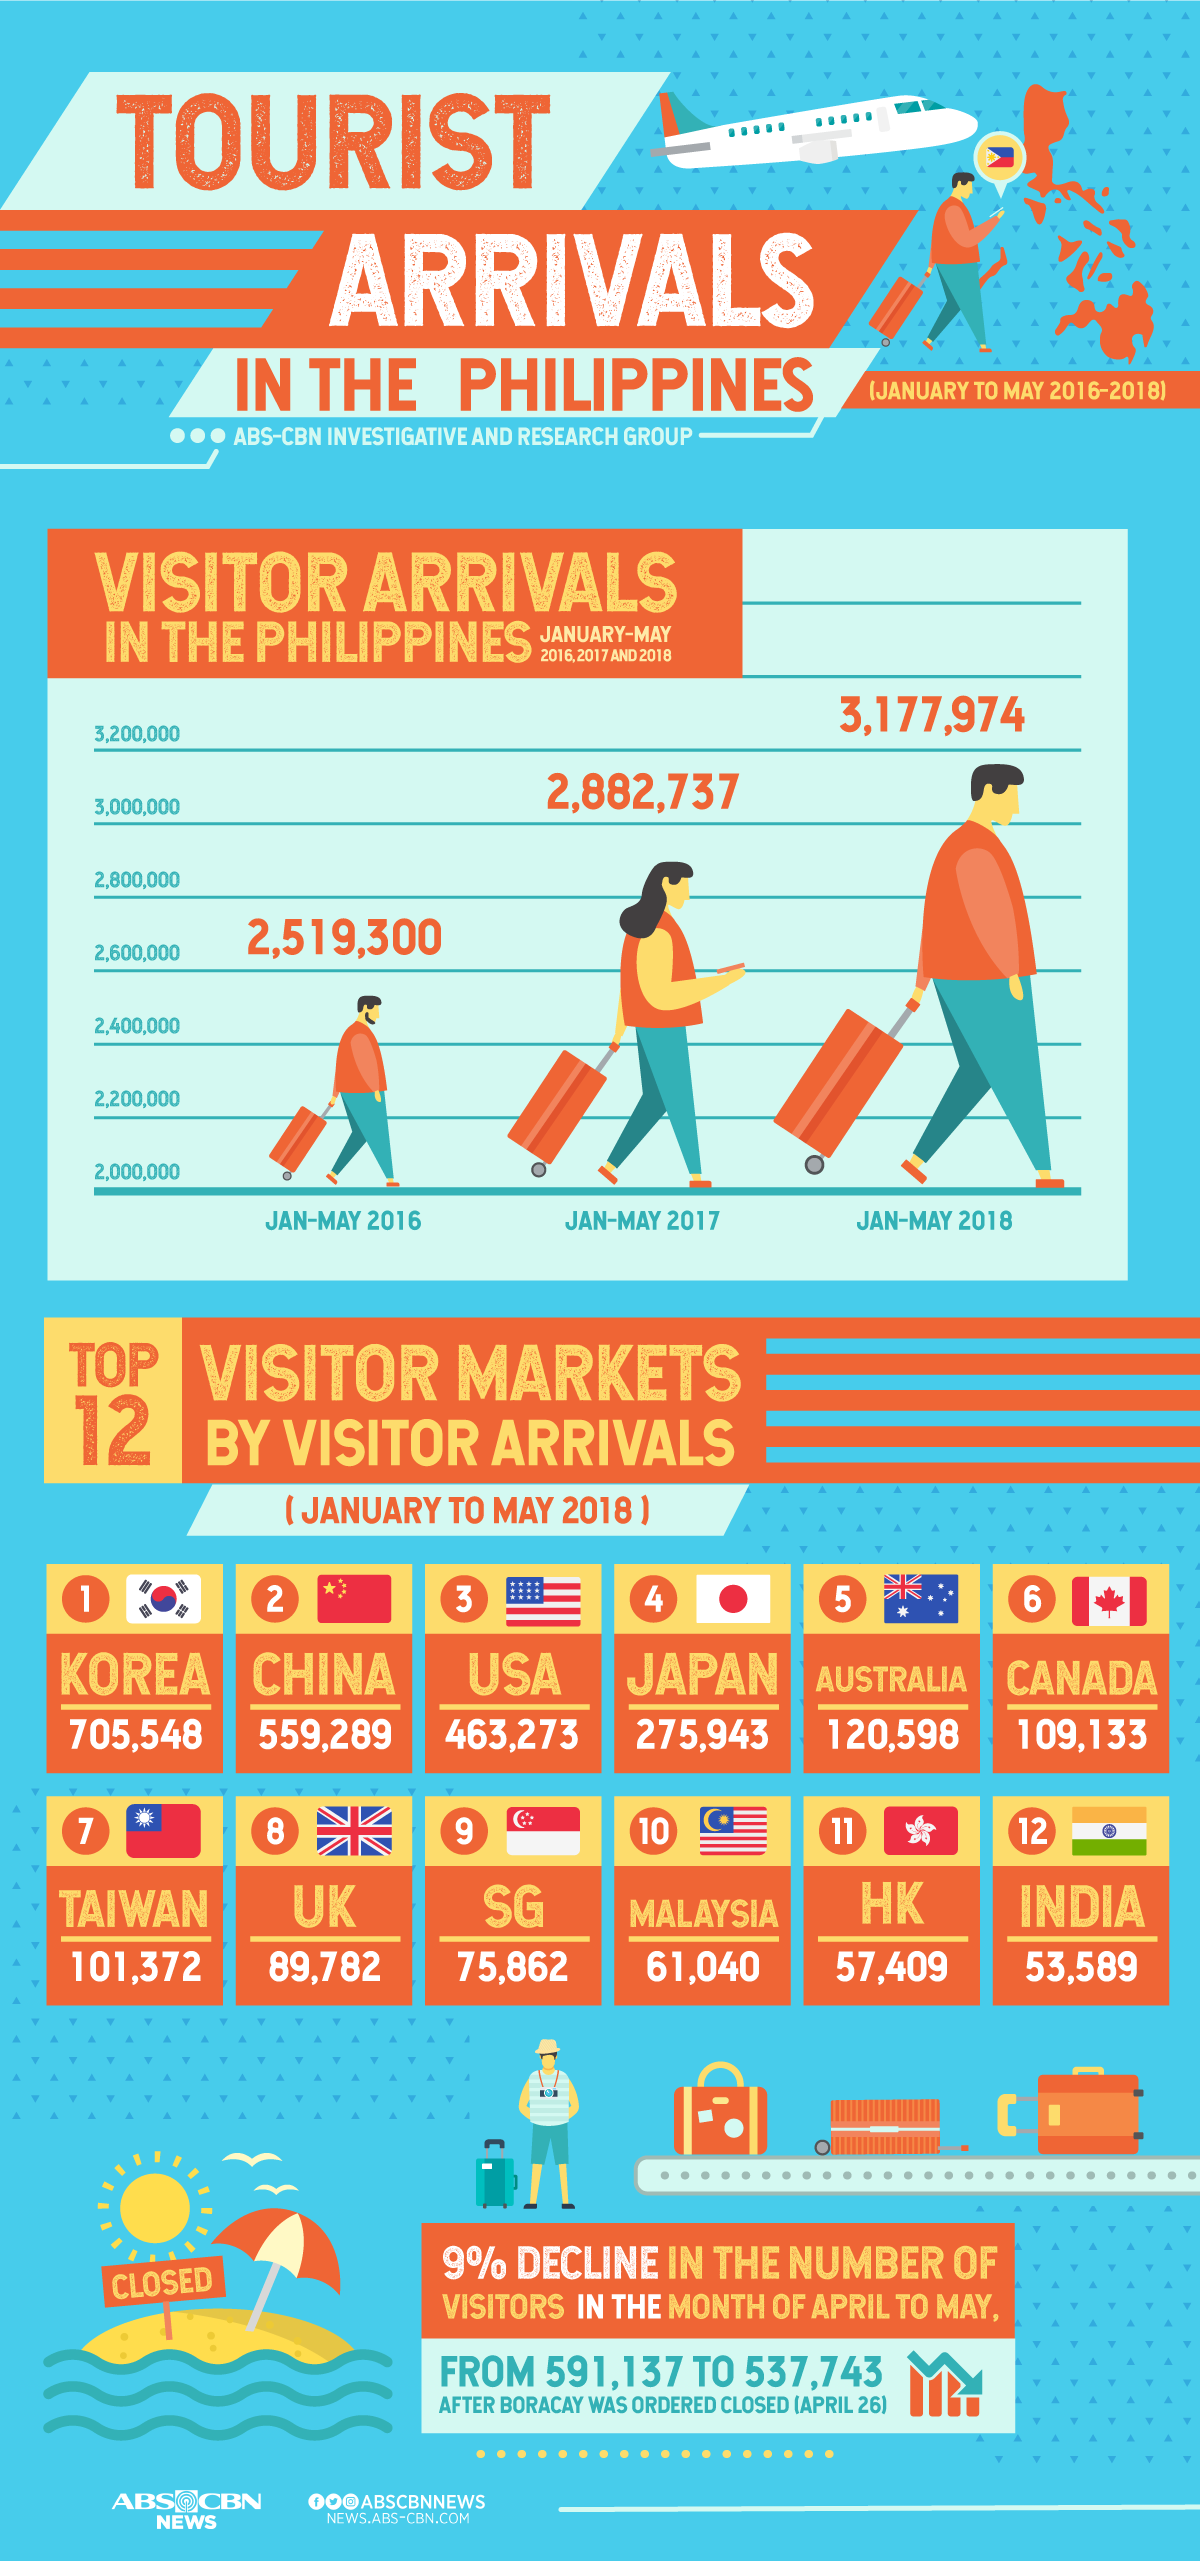 tourism departures philippines